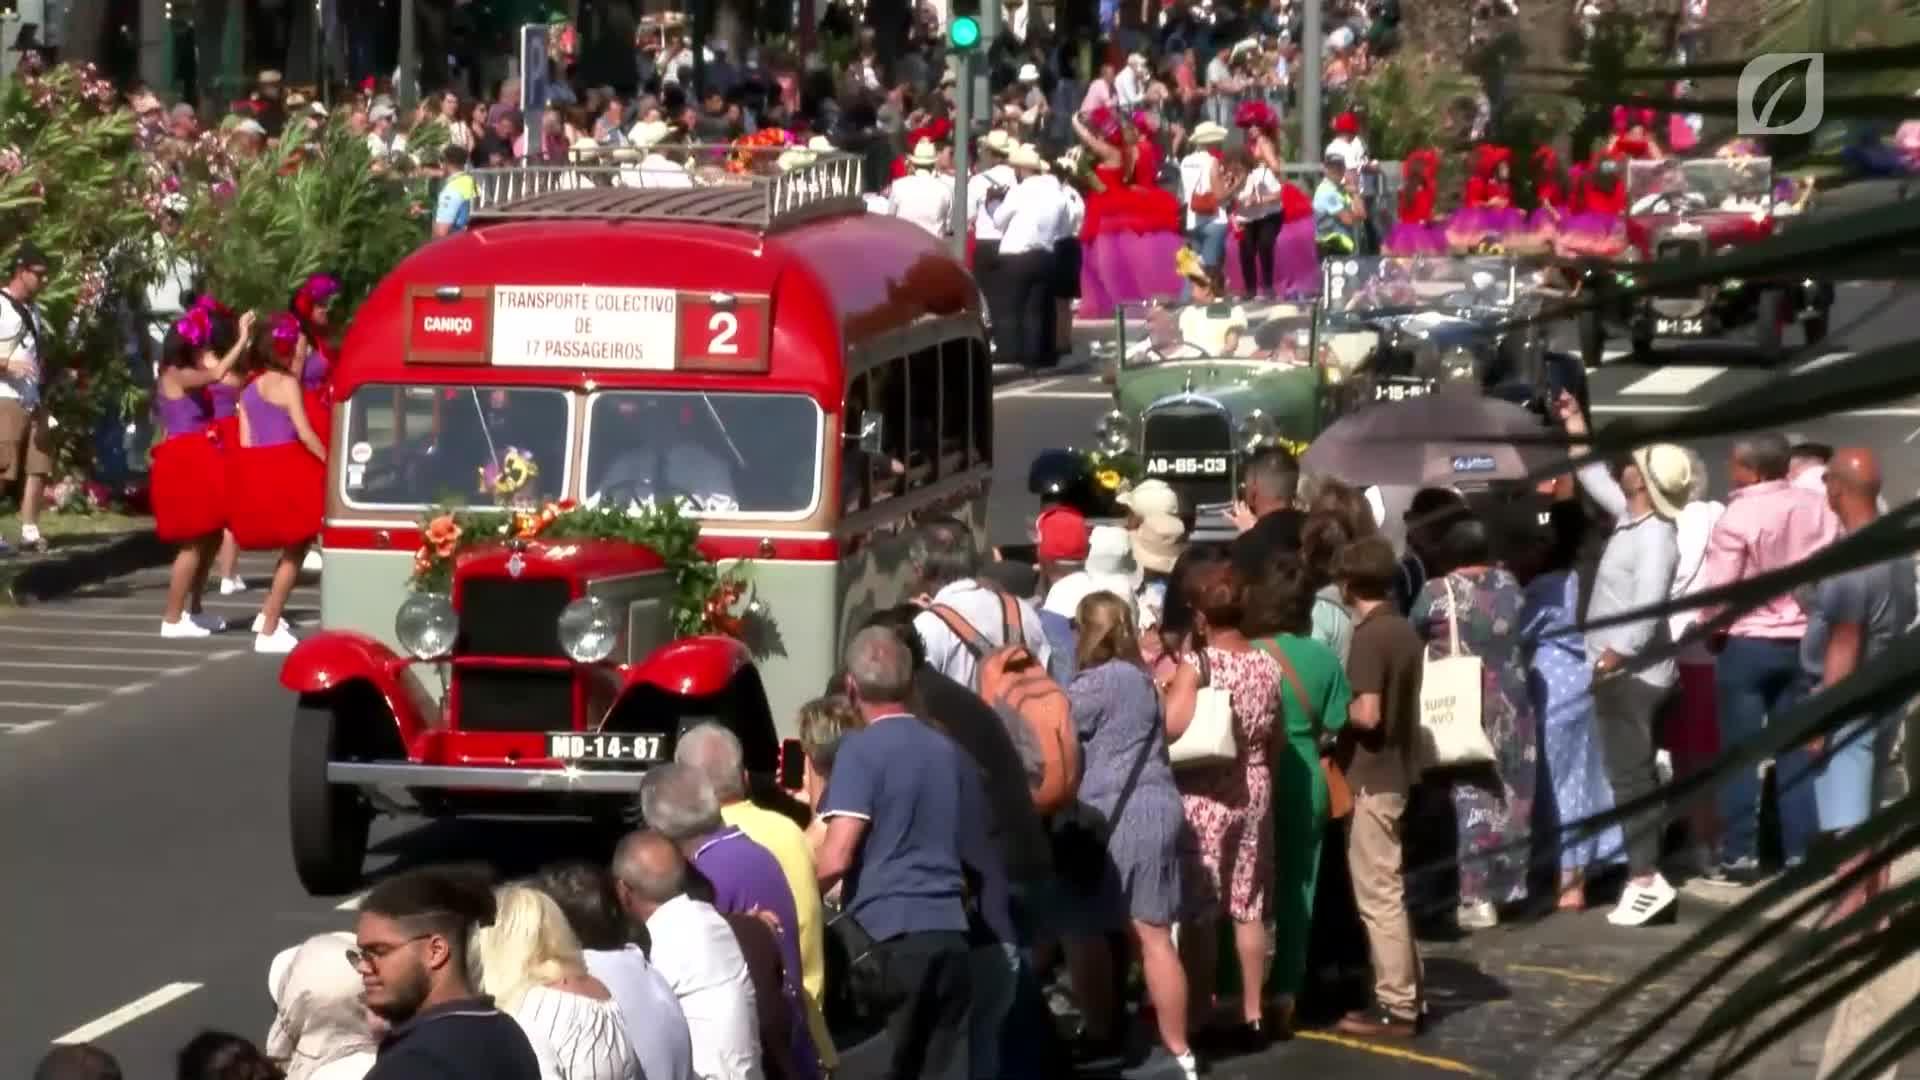 Madeira Flower Classic Auto Parade